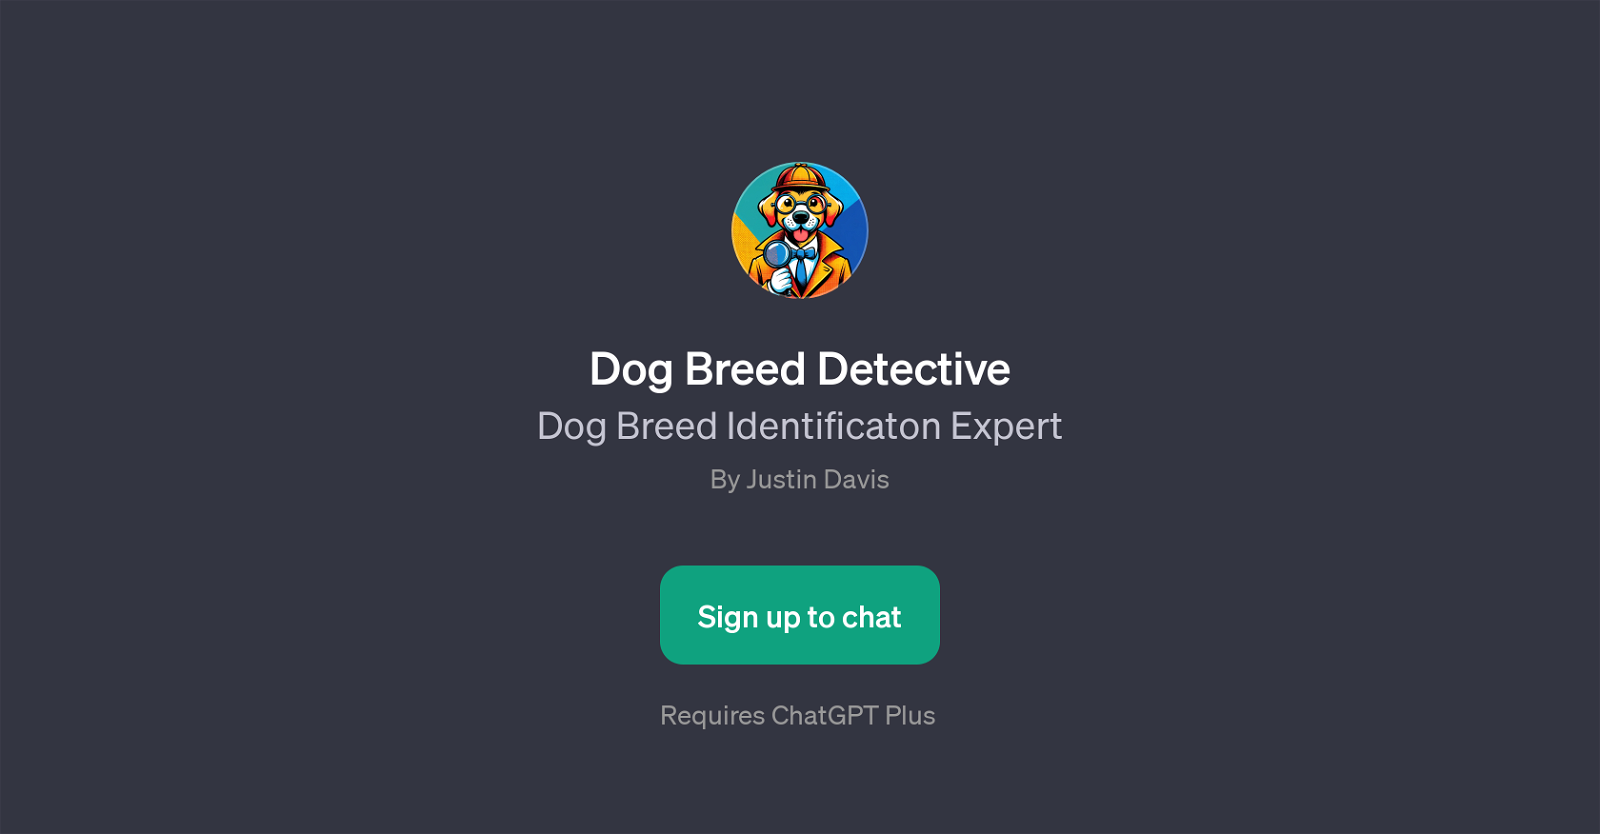 Dog Breed Detective website